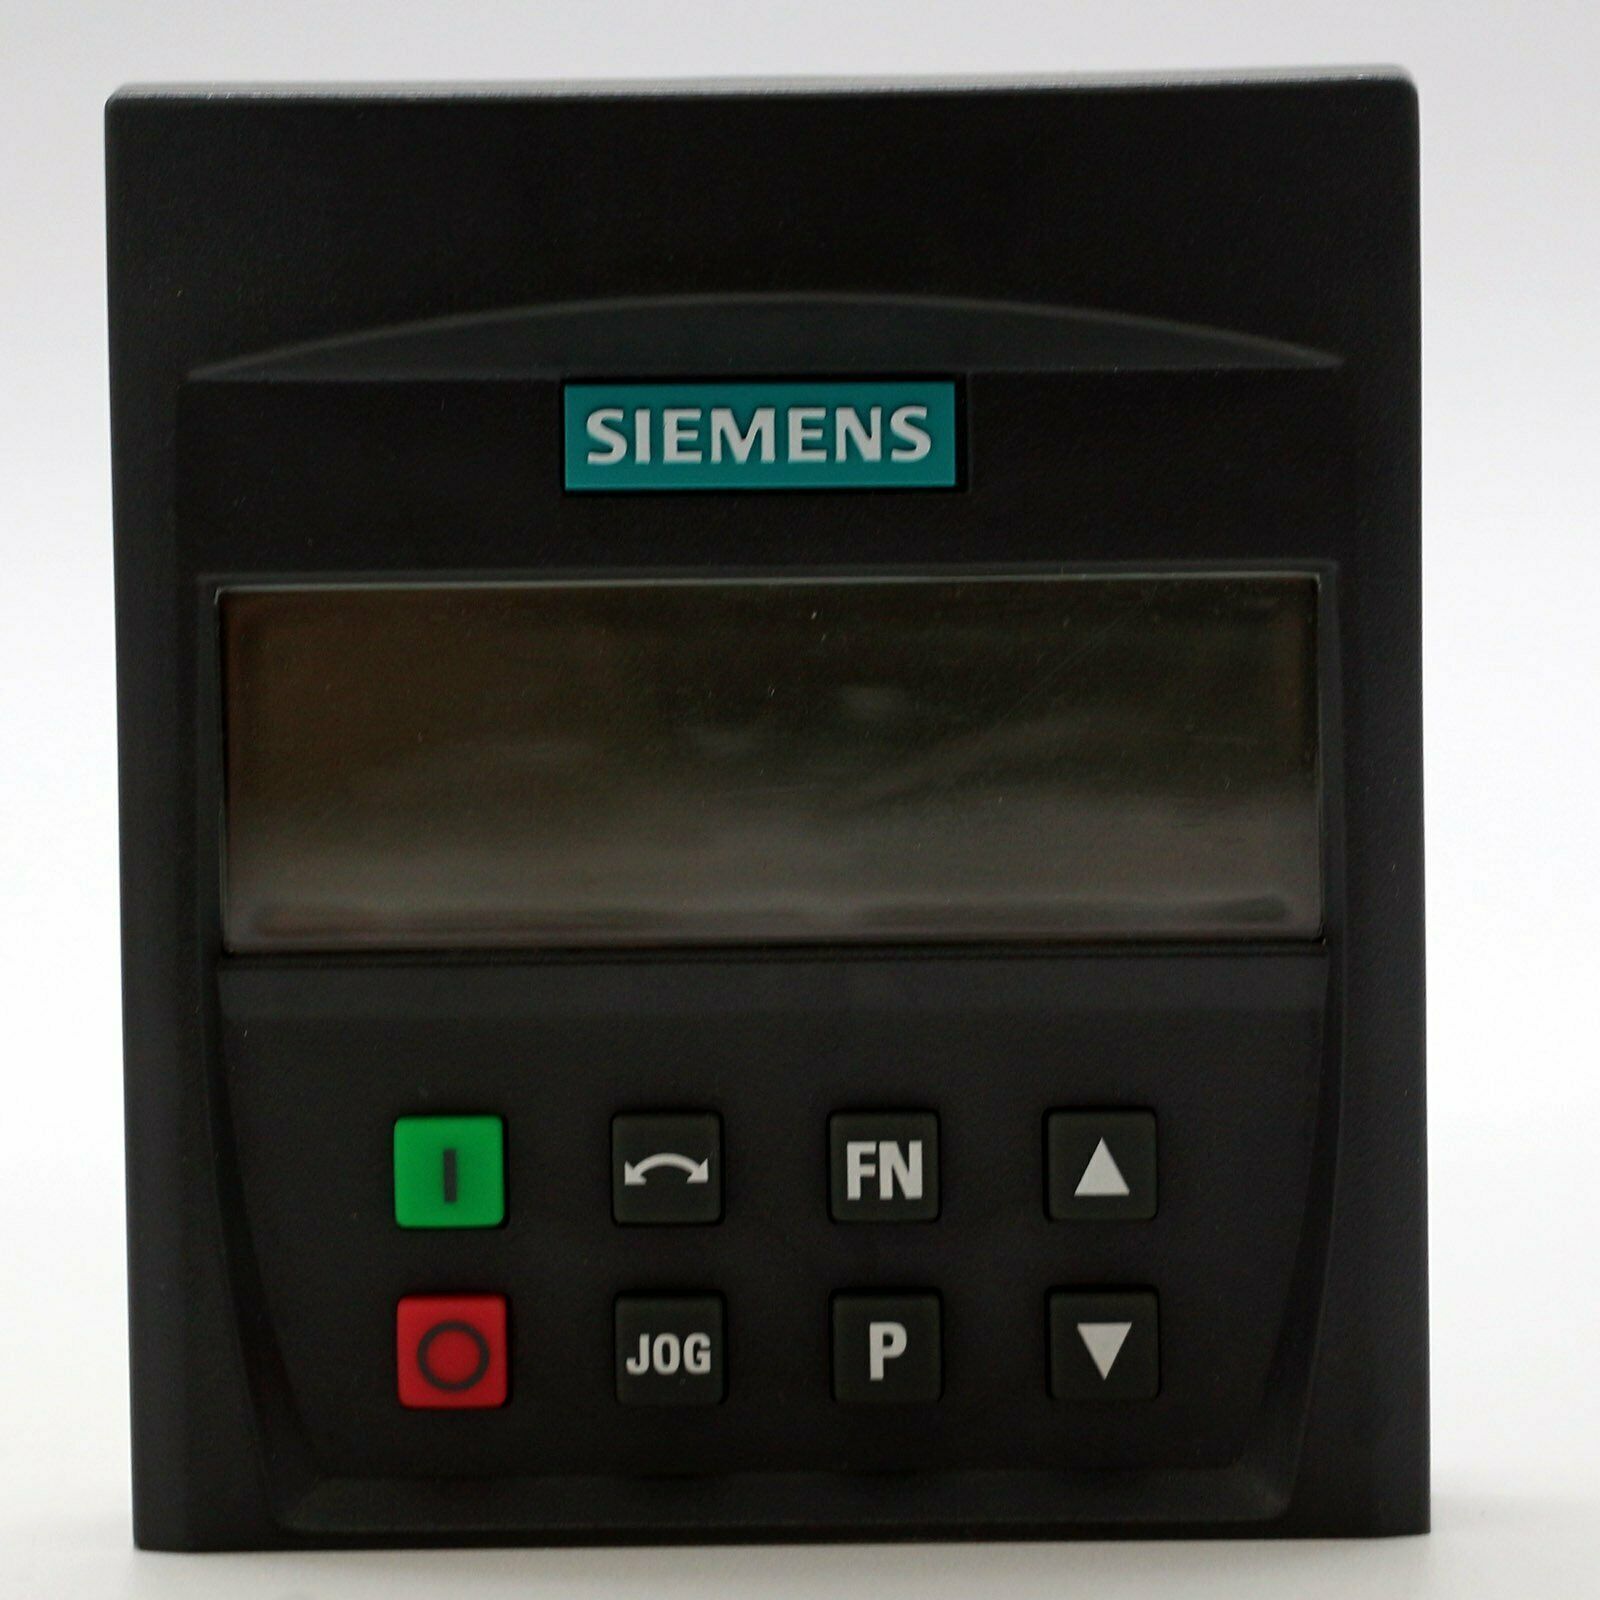 new 1PC  Siemens 6SE6400-0BP00-0AA1 6SE6 400-0BP00-0AA1 Operation panel